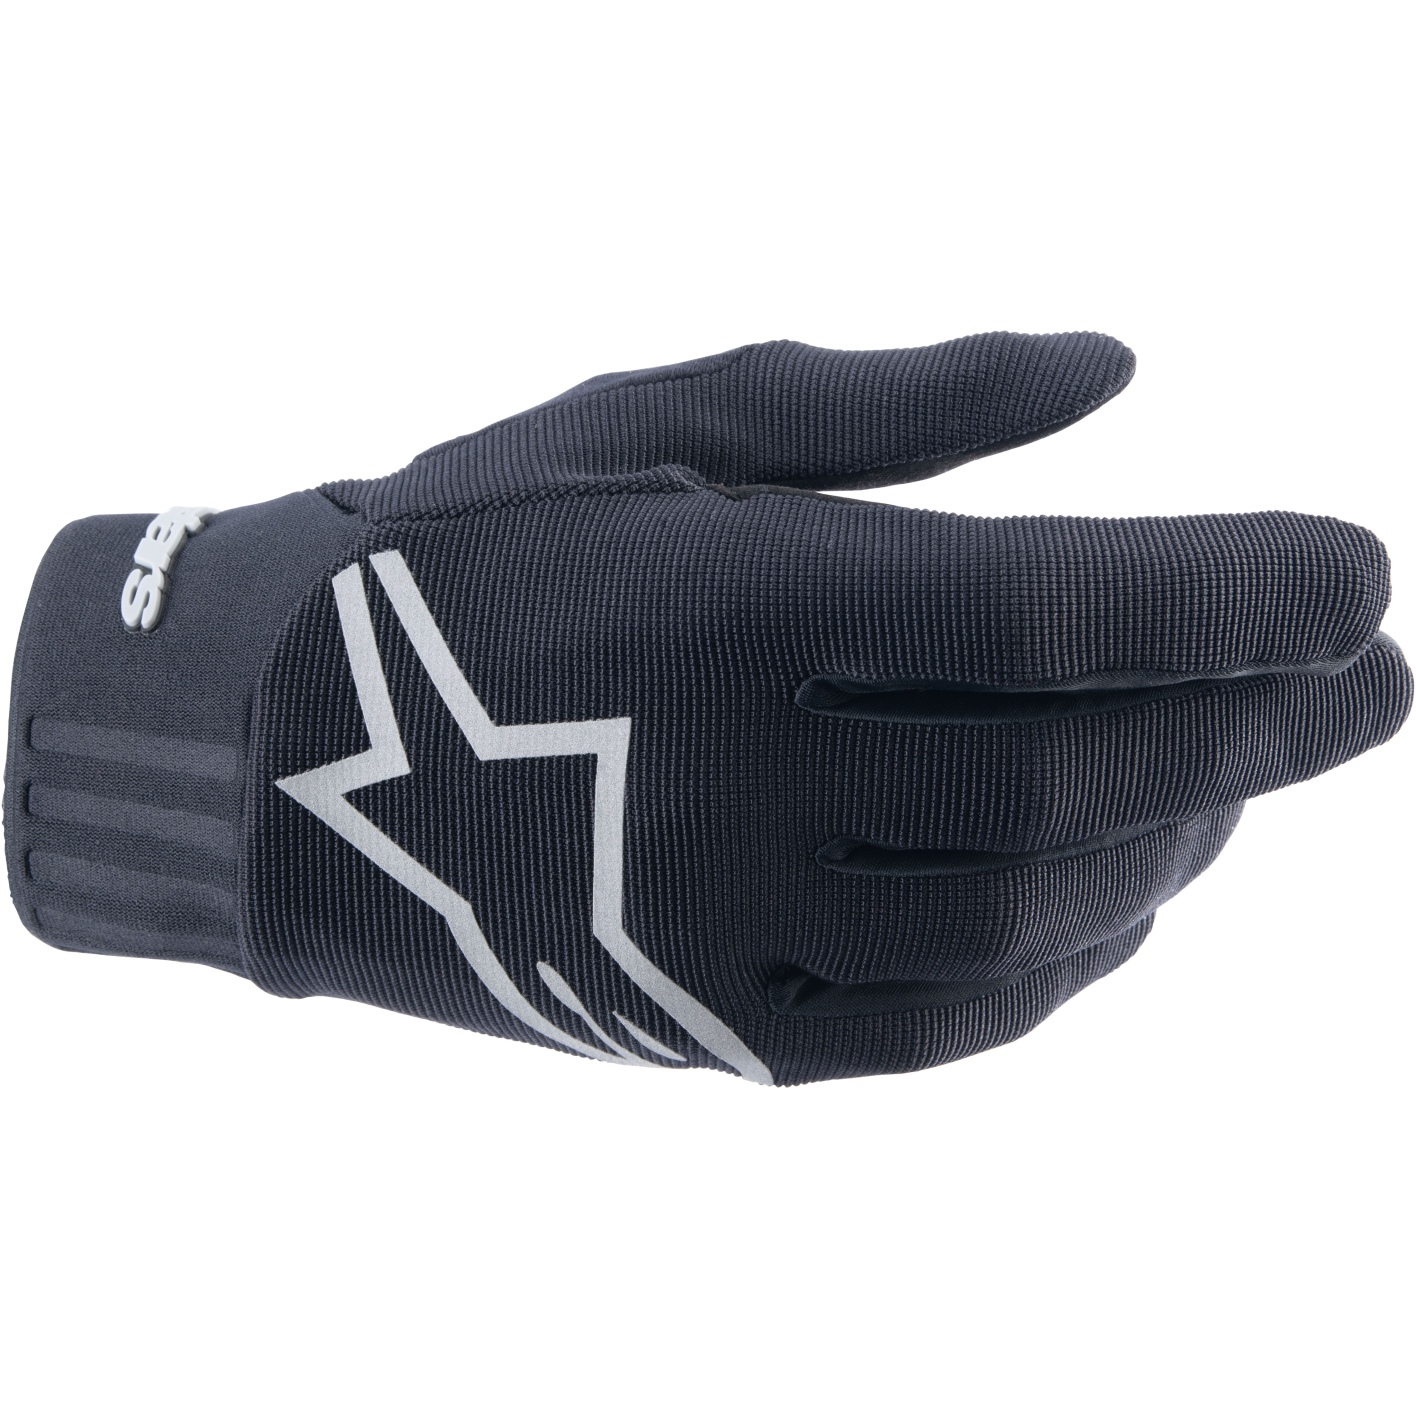 Produktbild von Alpinestars Stella A-Dura Handschuhe Damen - schwarz